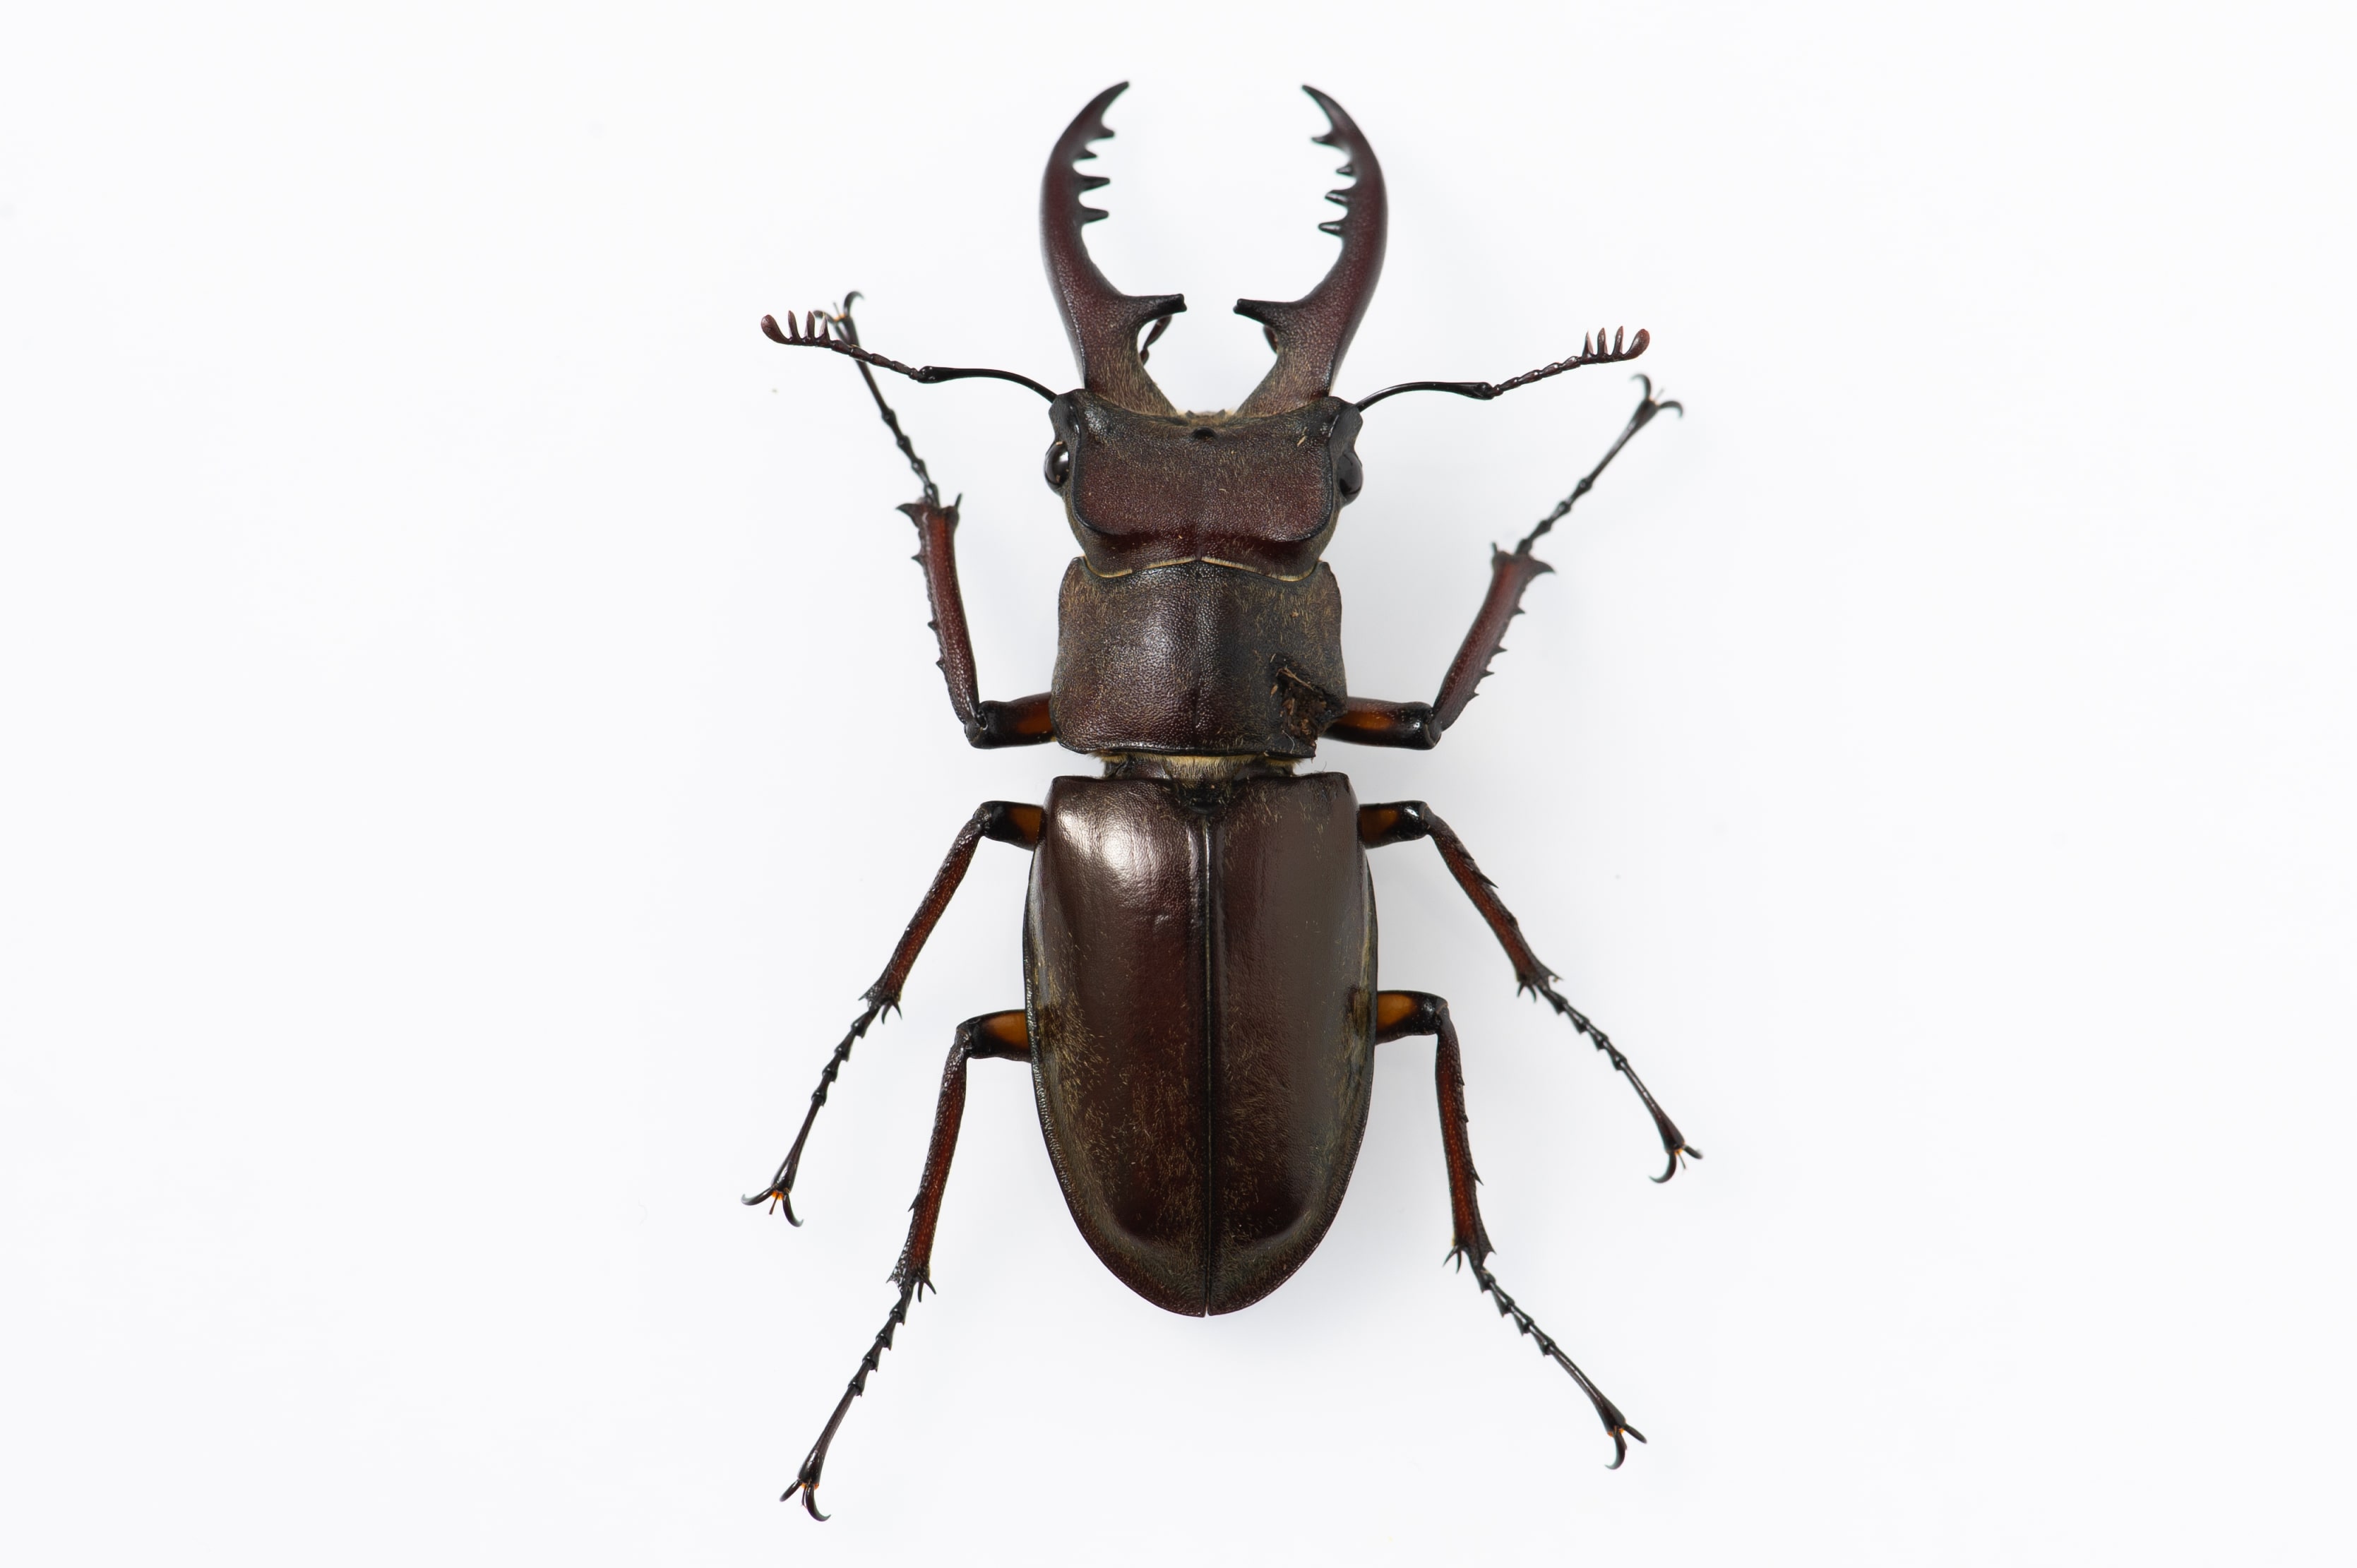 ミヤマクワガタの特徴や他のメスとの見分けなど 虫の写真と生態なら昆虫写真図鑑 ムシミル